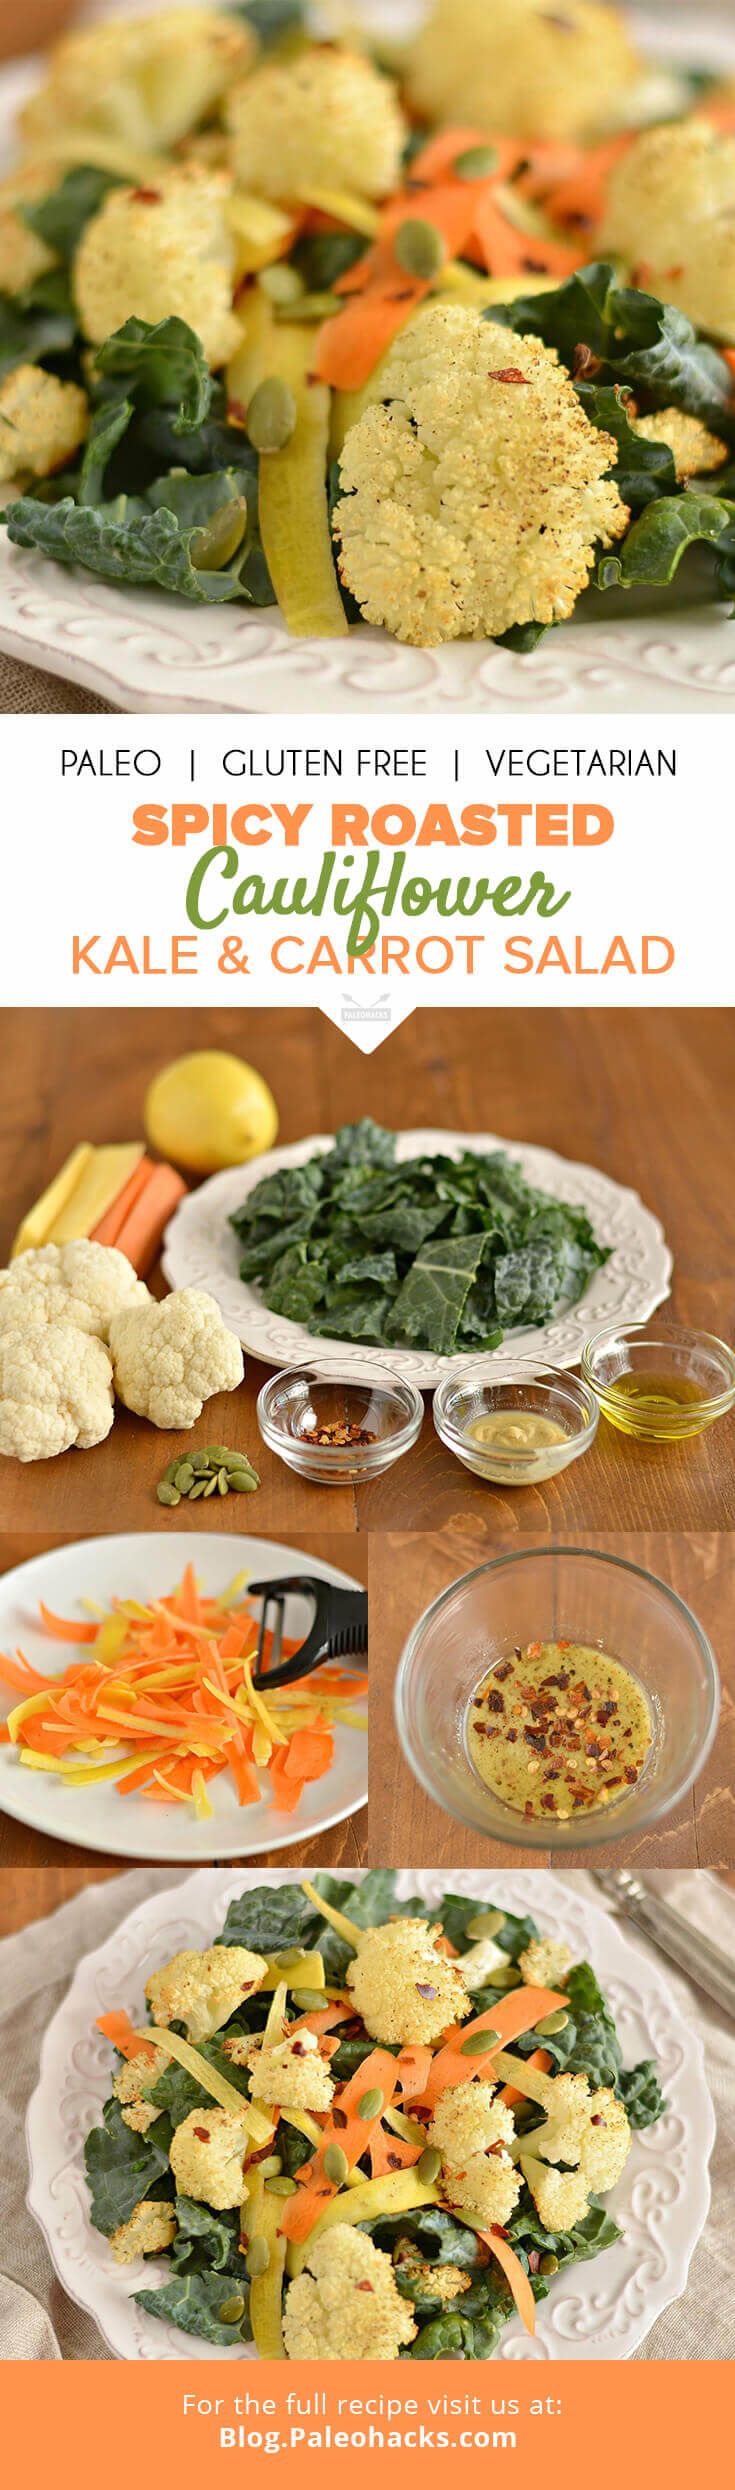 kale and carrot salad pin